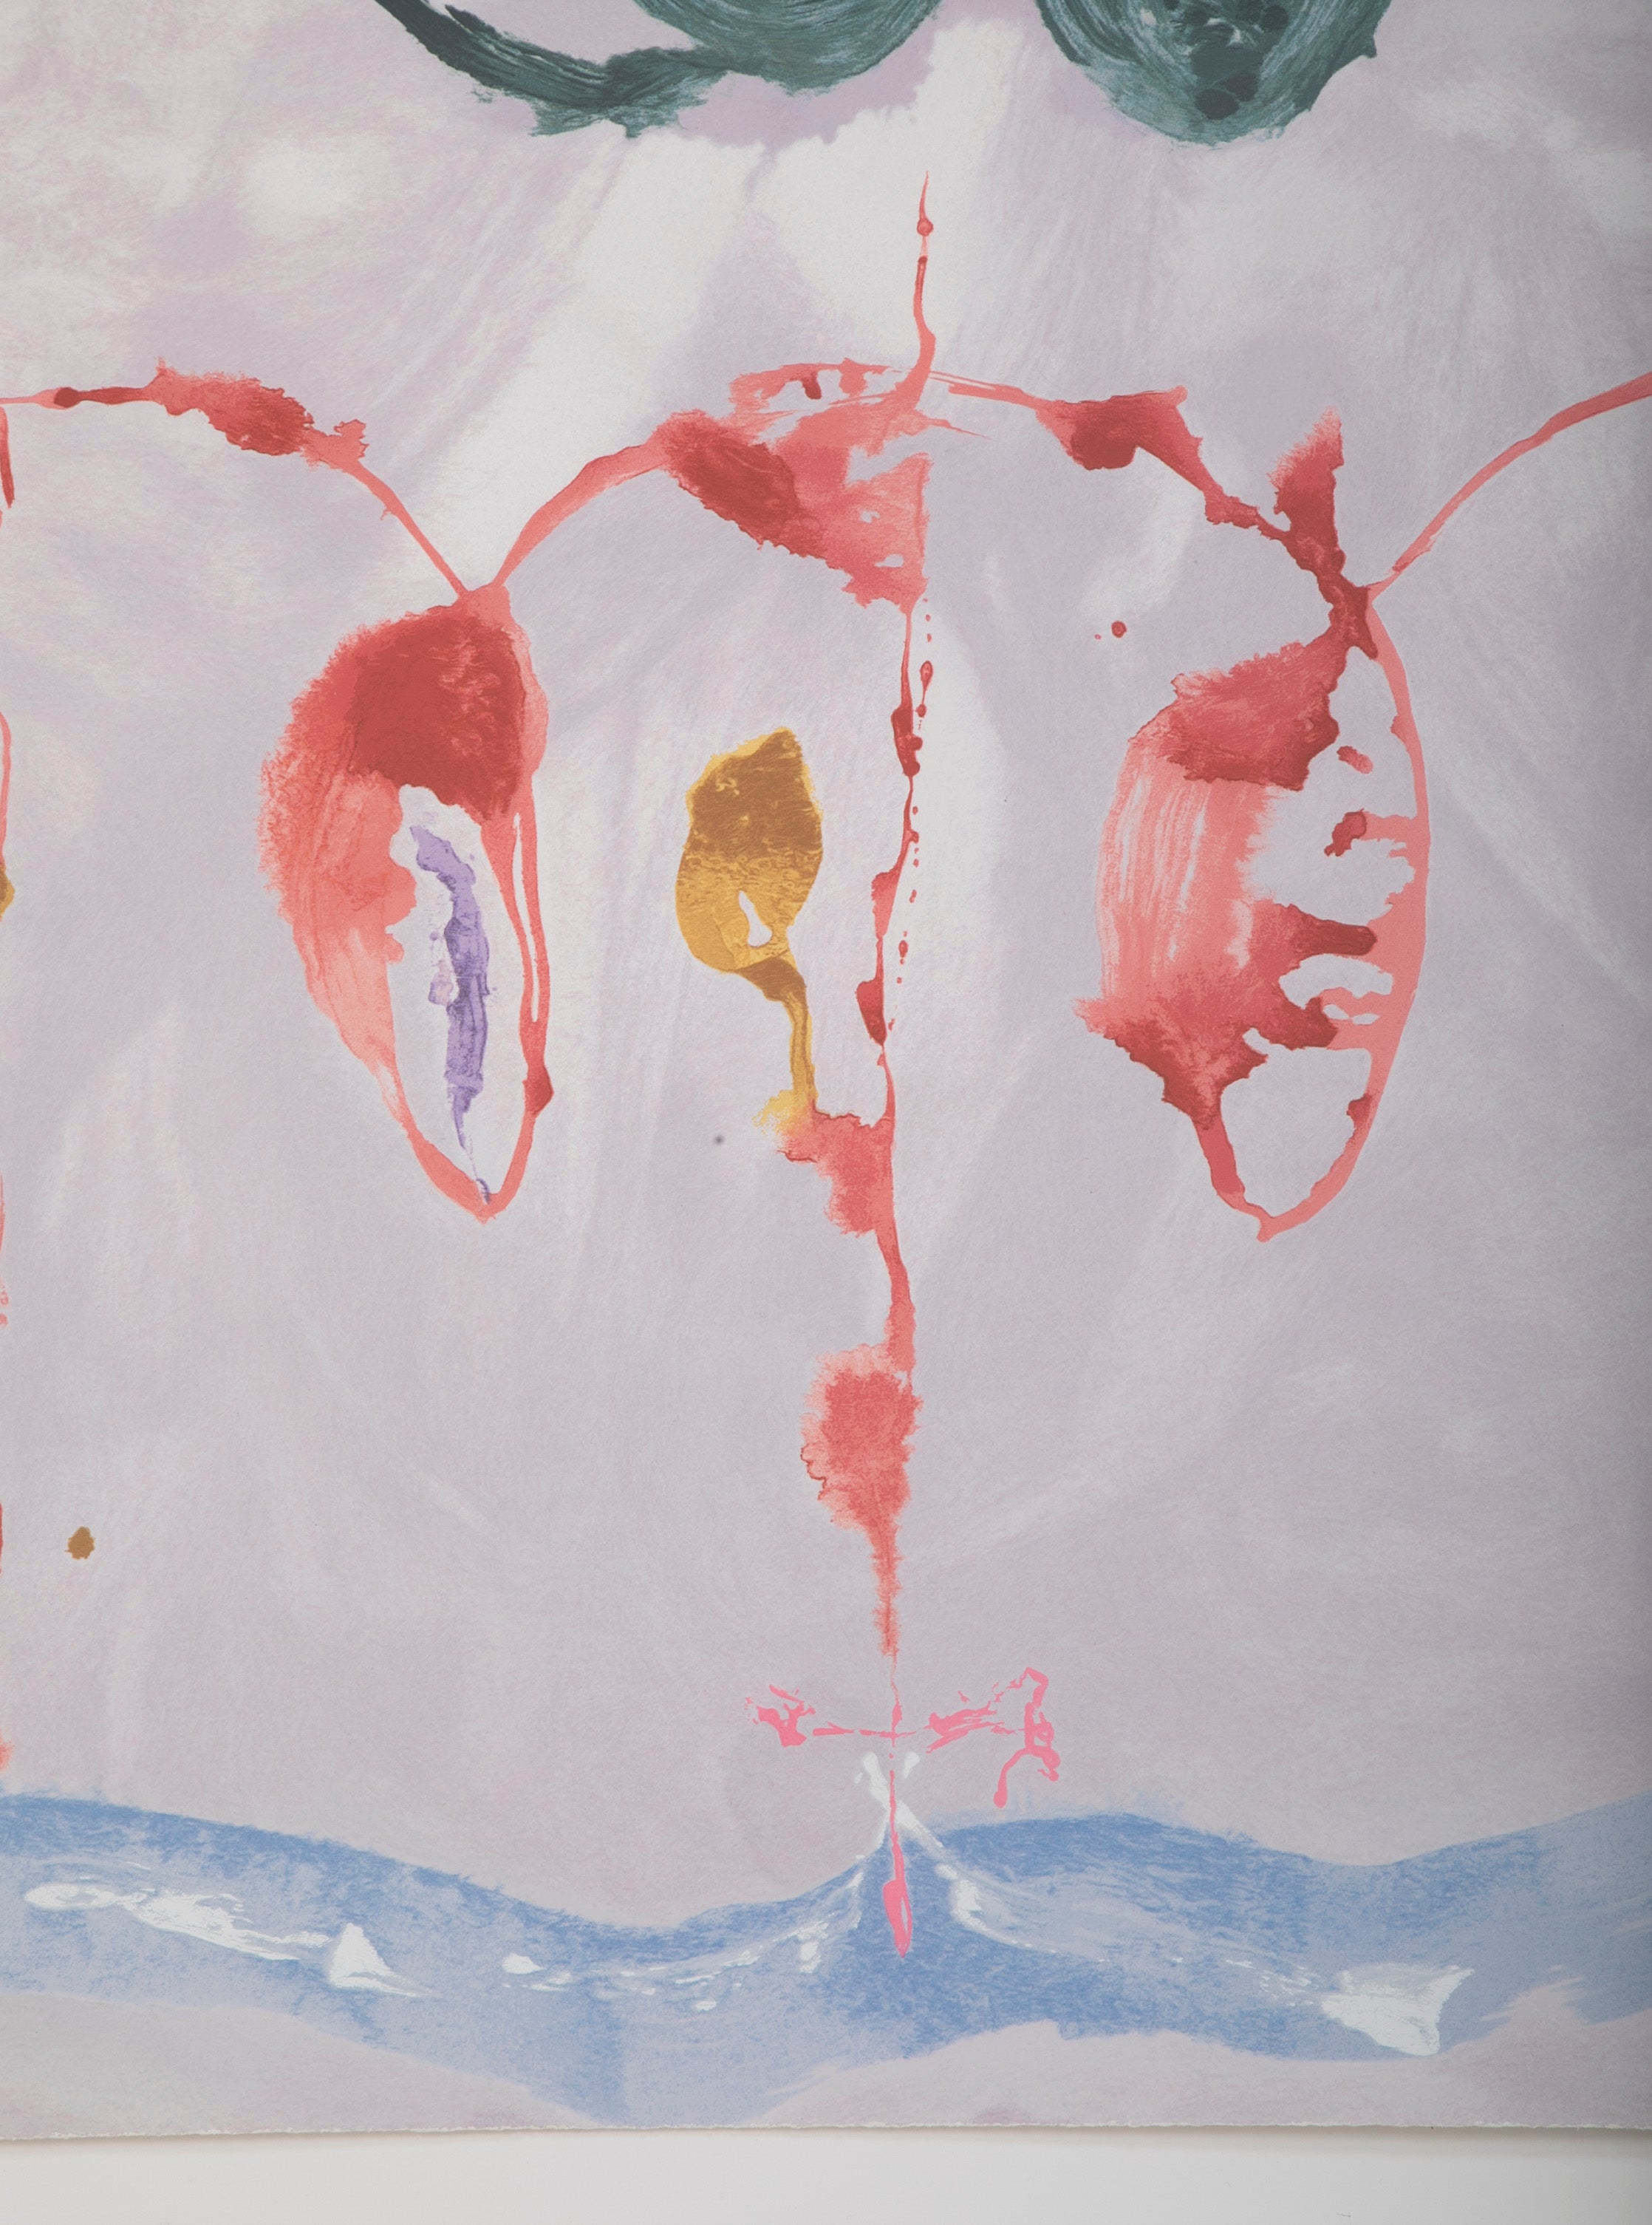 Serigraph by Helen Frankenthaler titled "Aerie". 2009